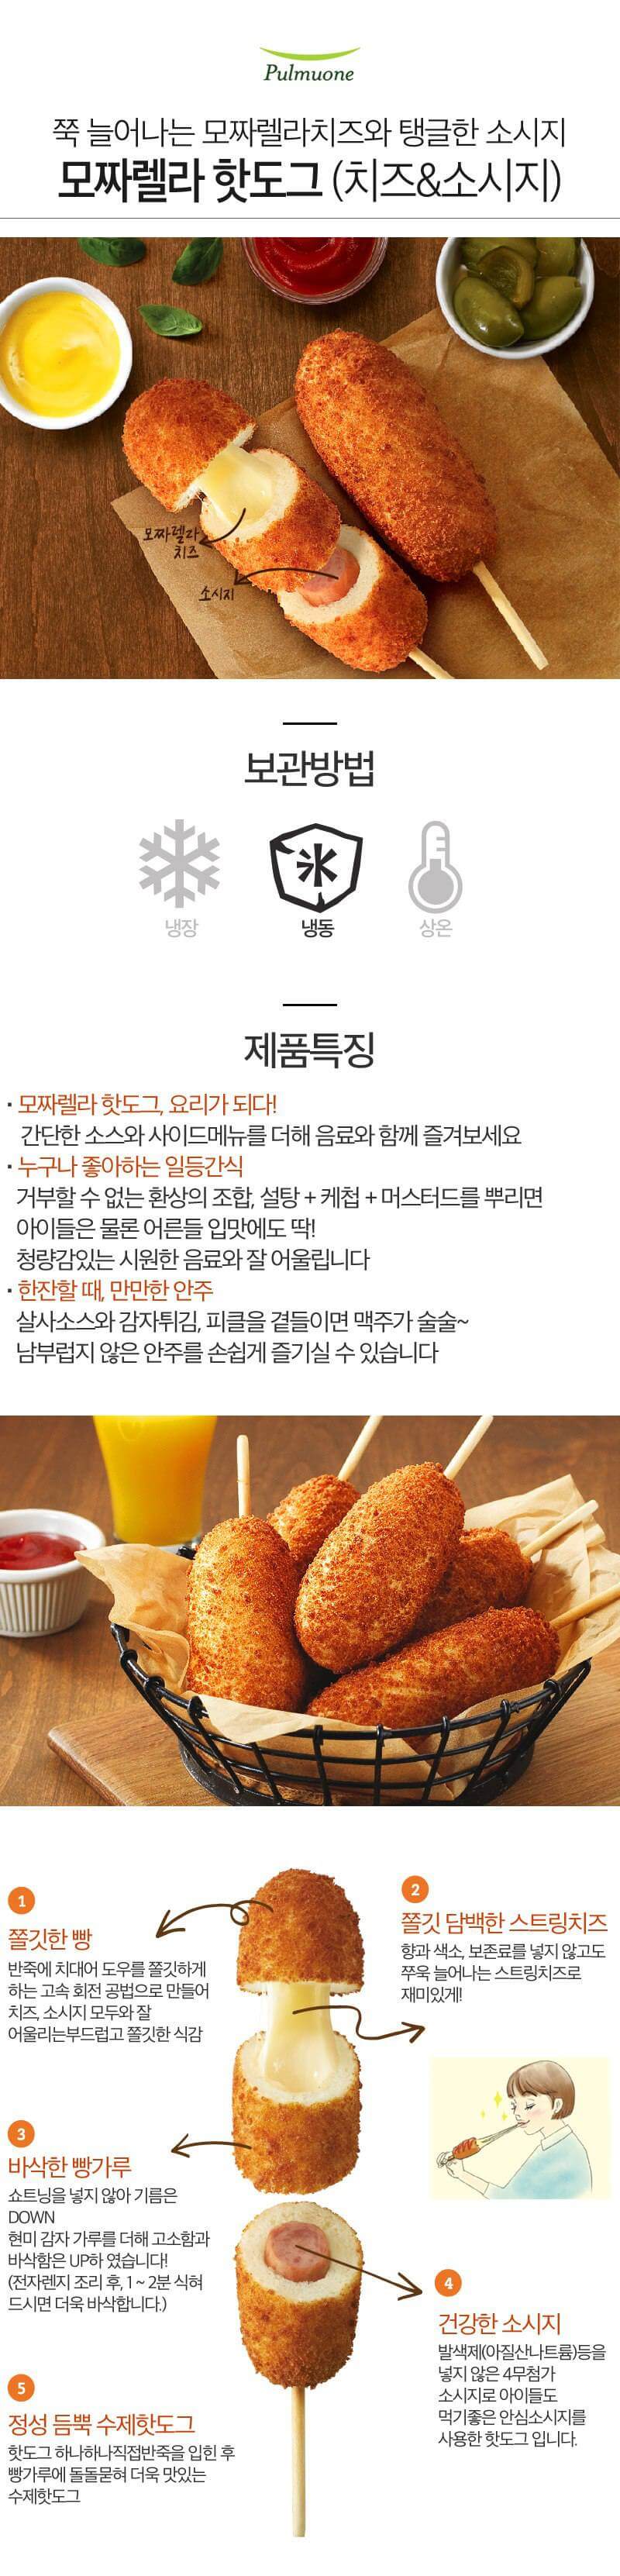 韓國食品-[Pulmuone] Mozzarella Hot Dog 400g (no. 7 & 22)